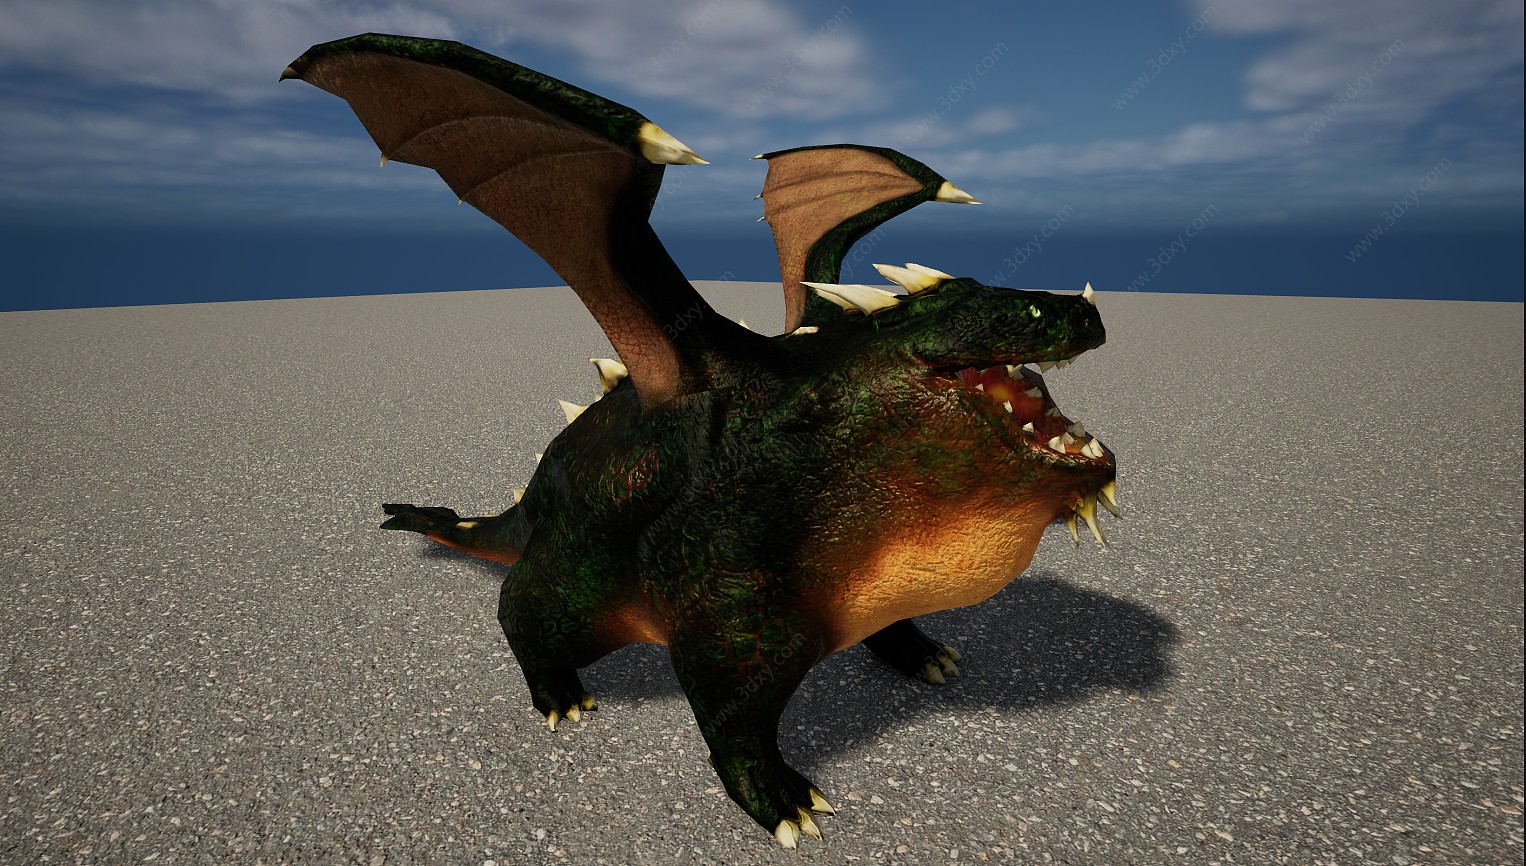 凶猛怪兽动物喷火龙3D模型